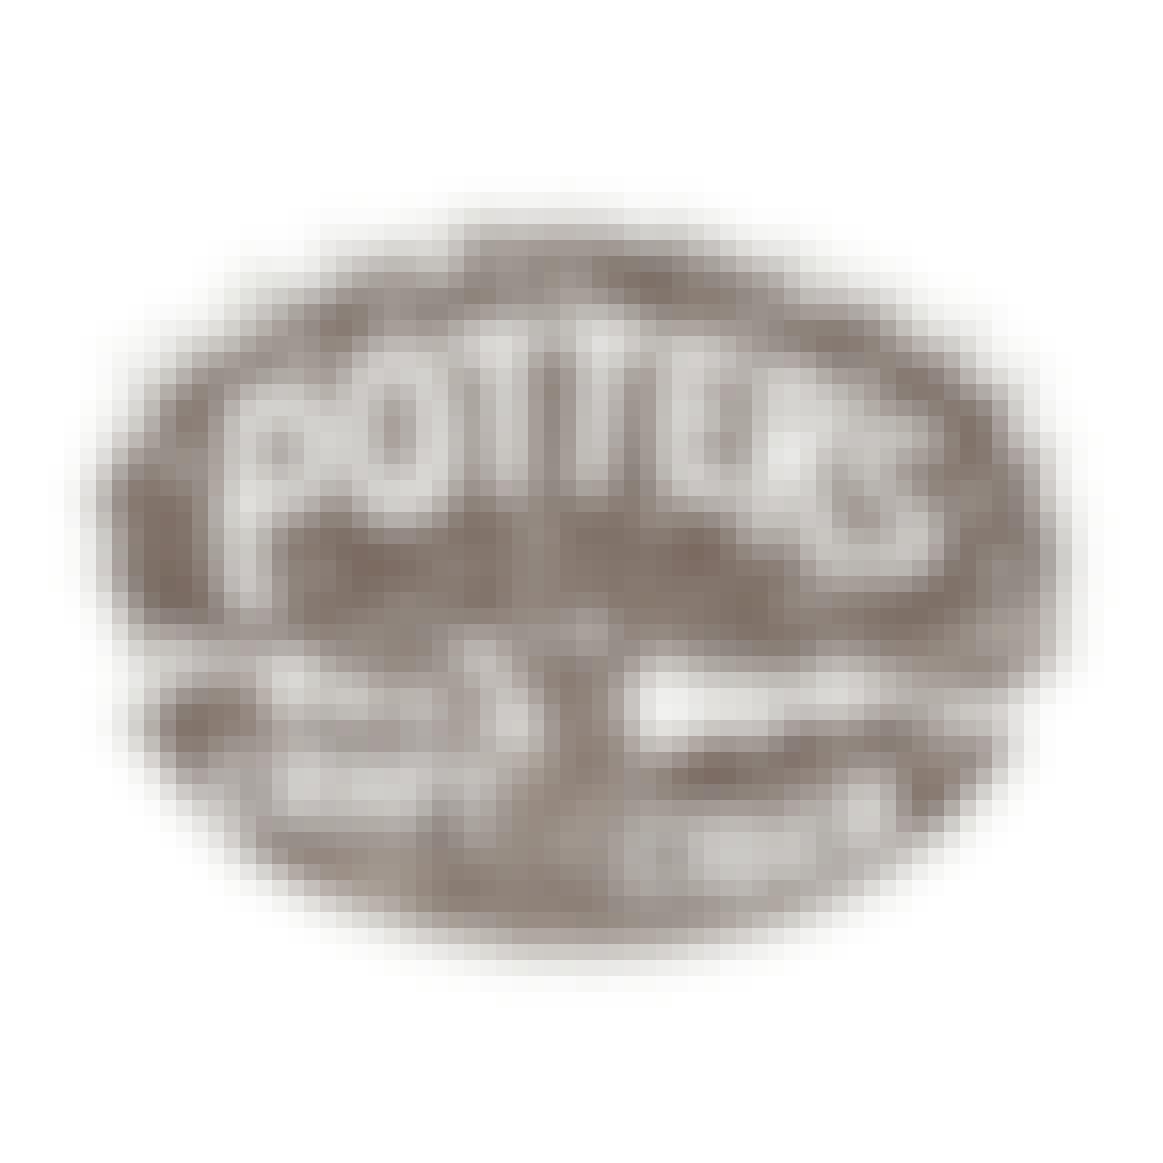 Potter's Craft Cider Petite Cider 6 pack 12 oz. Can